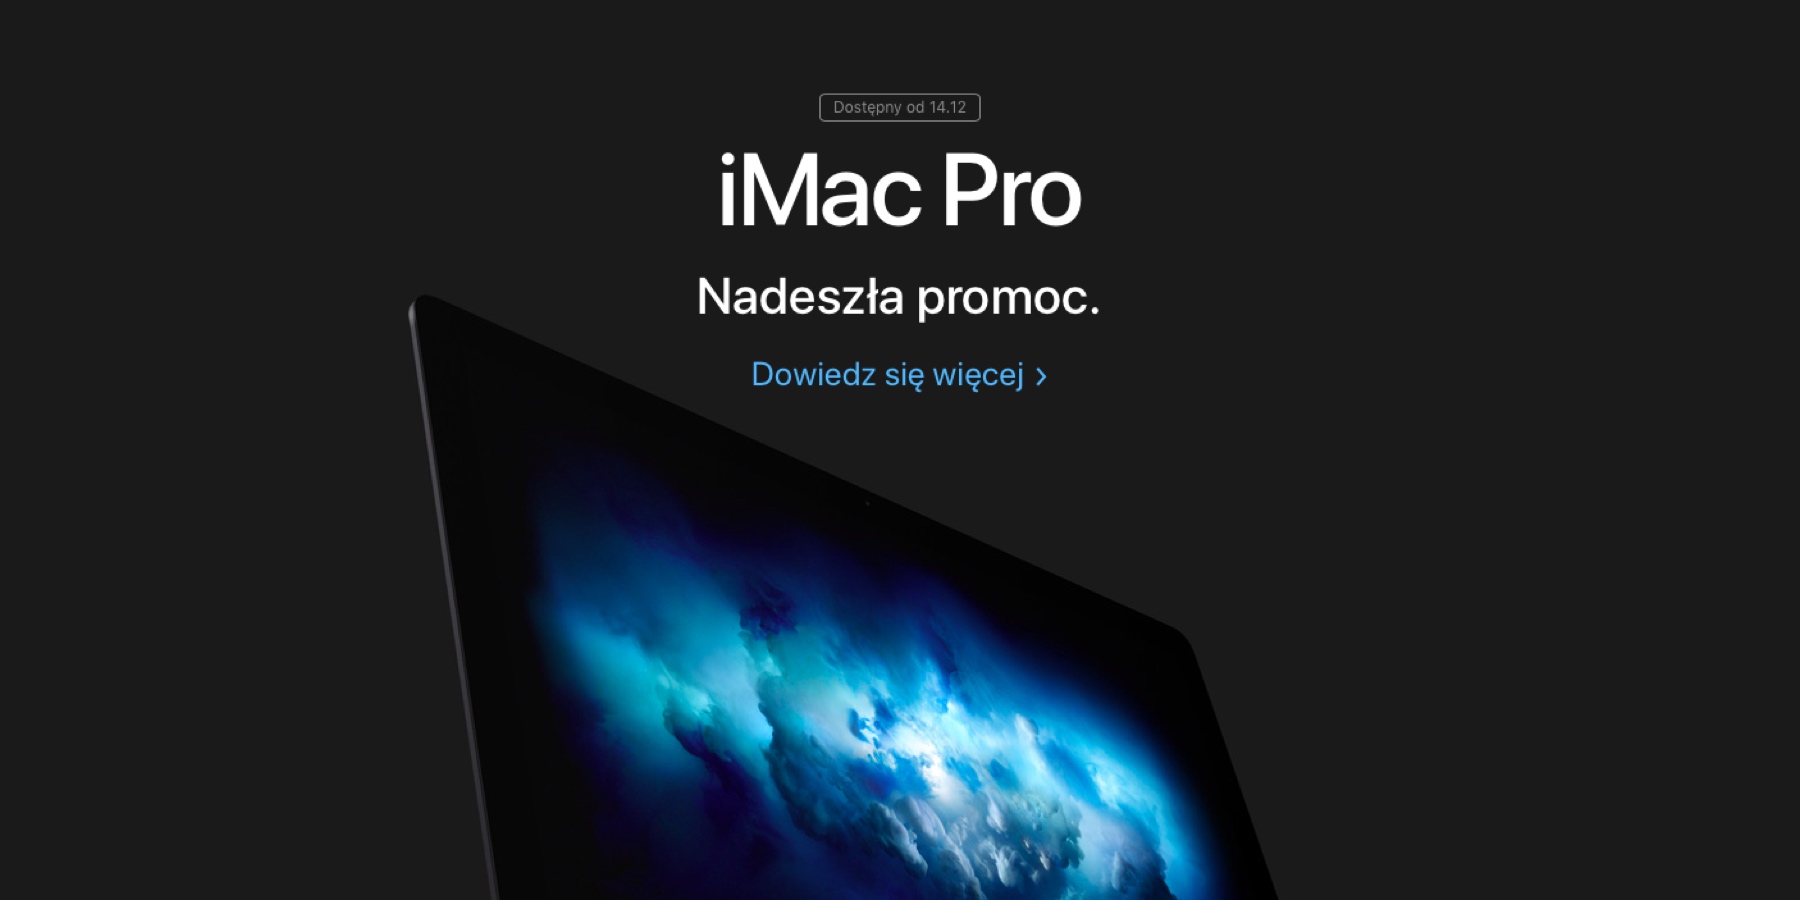 iMac Pro dostępny do 14 grudnia!